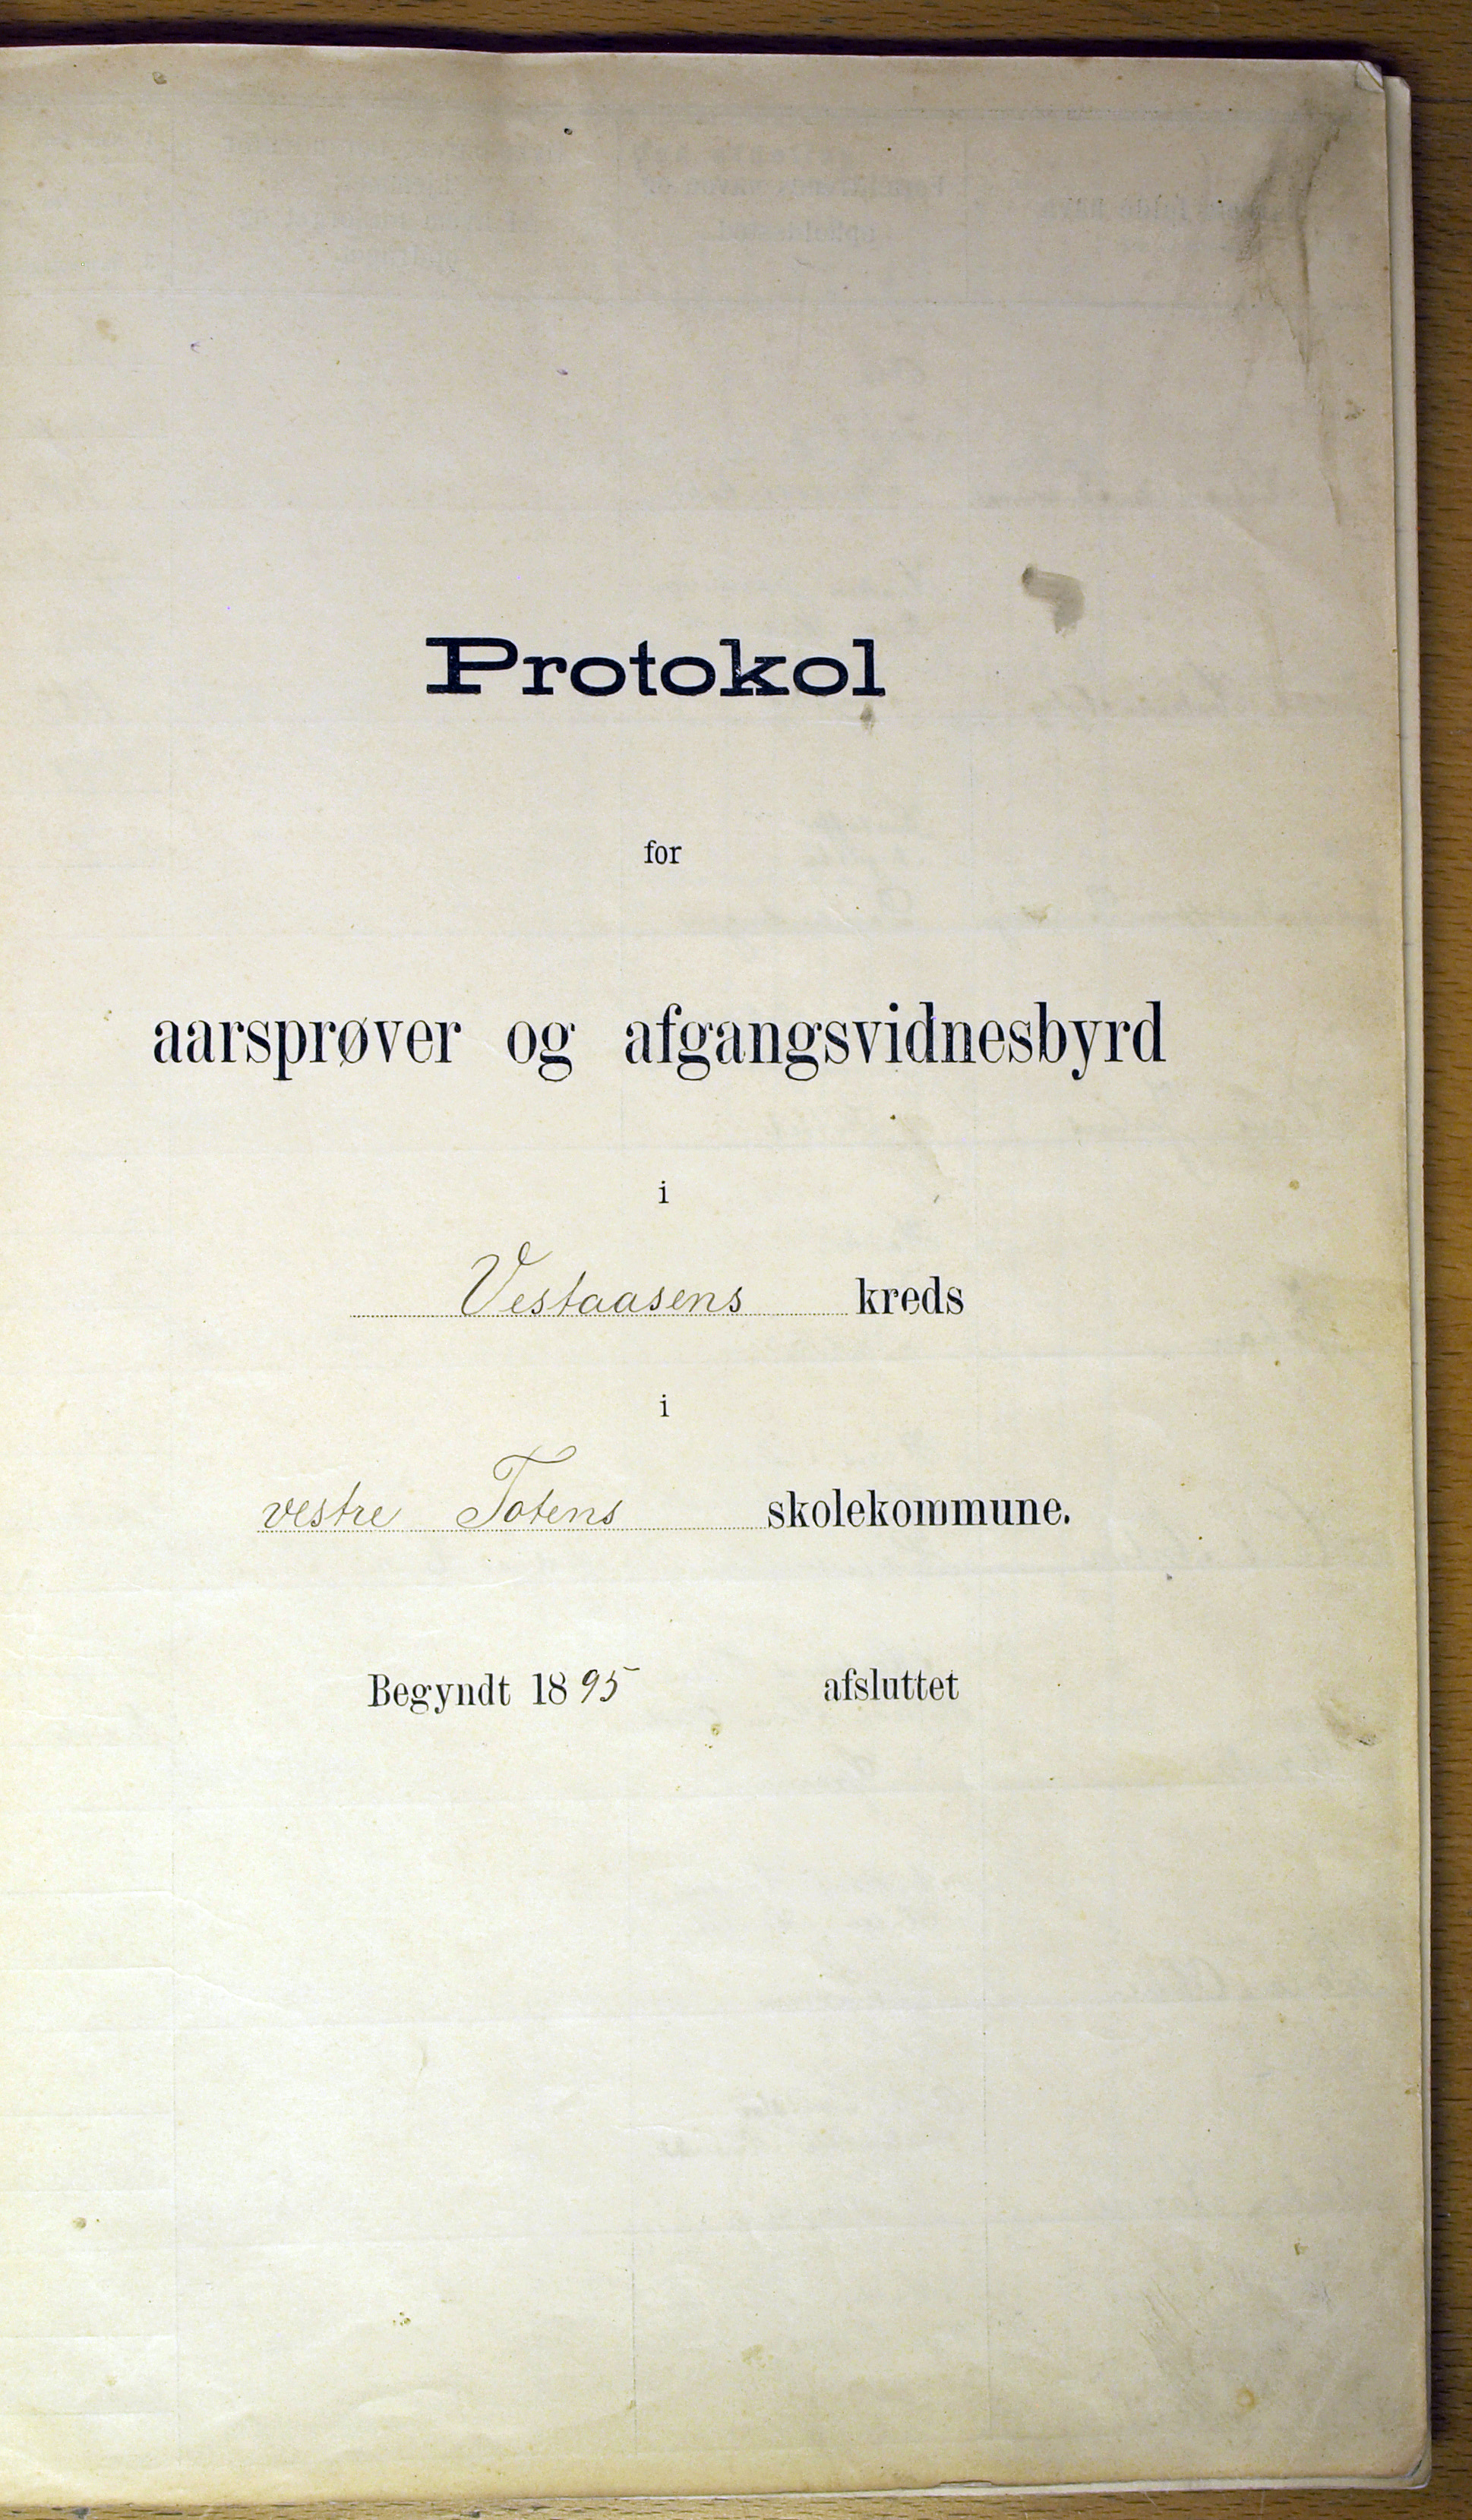 Vestre Toten kommunearkiv*, KVT/-/-/-: Protokoll for årsprøver og avgangsvitnesbyrd, Veståsen krets i Vestre Toten skolekommune, 1895-1926